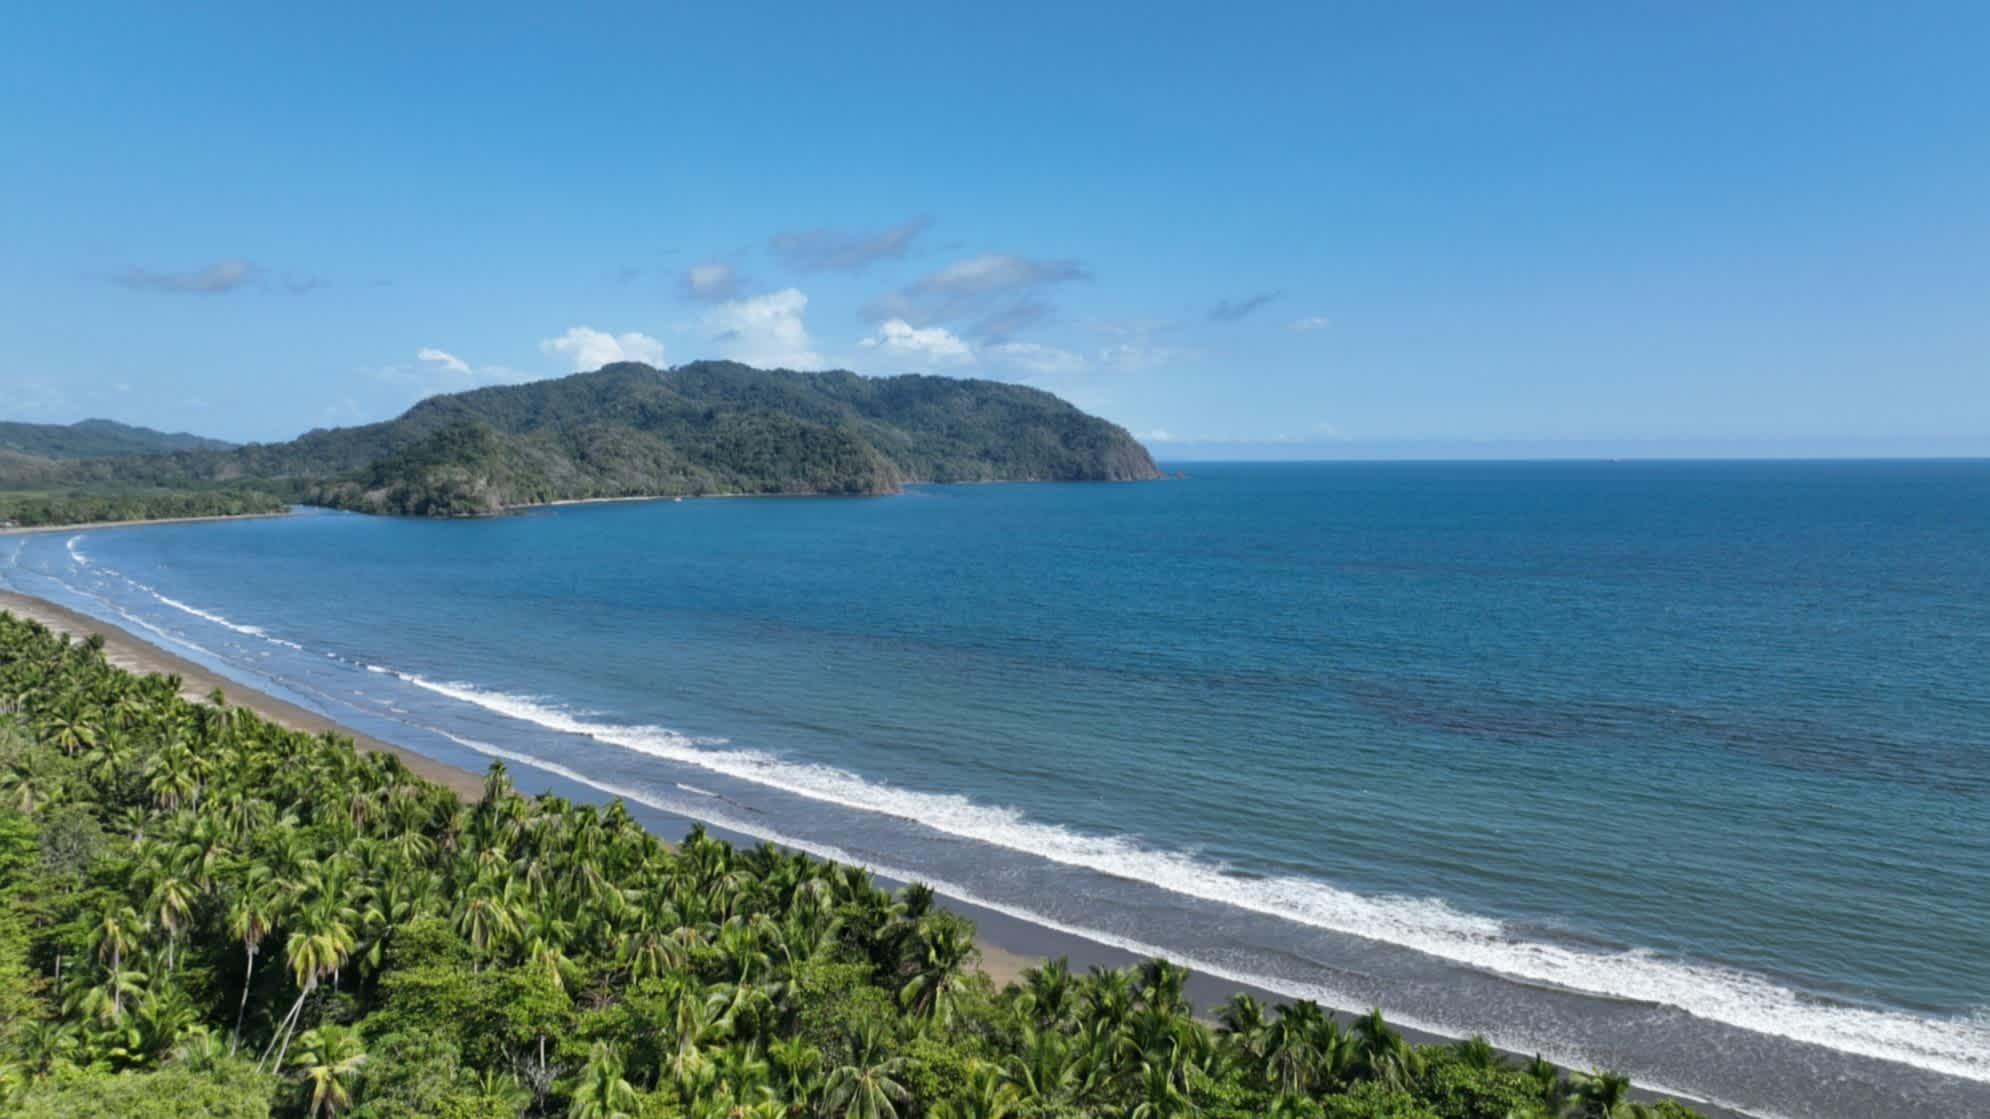 Der Strand Playa Tambor auf der Nicoya-Halbinsel in Costa Rica bei blauem Himmel und mit seichten Wellen im Wasser sowie grünen Hügeln im Hintergrund.